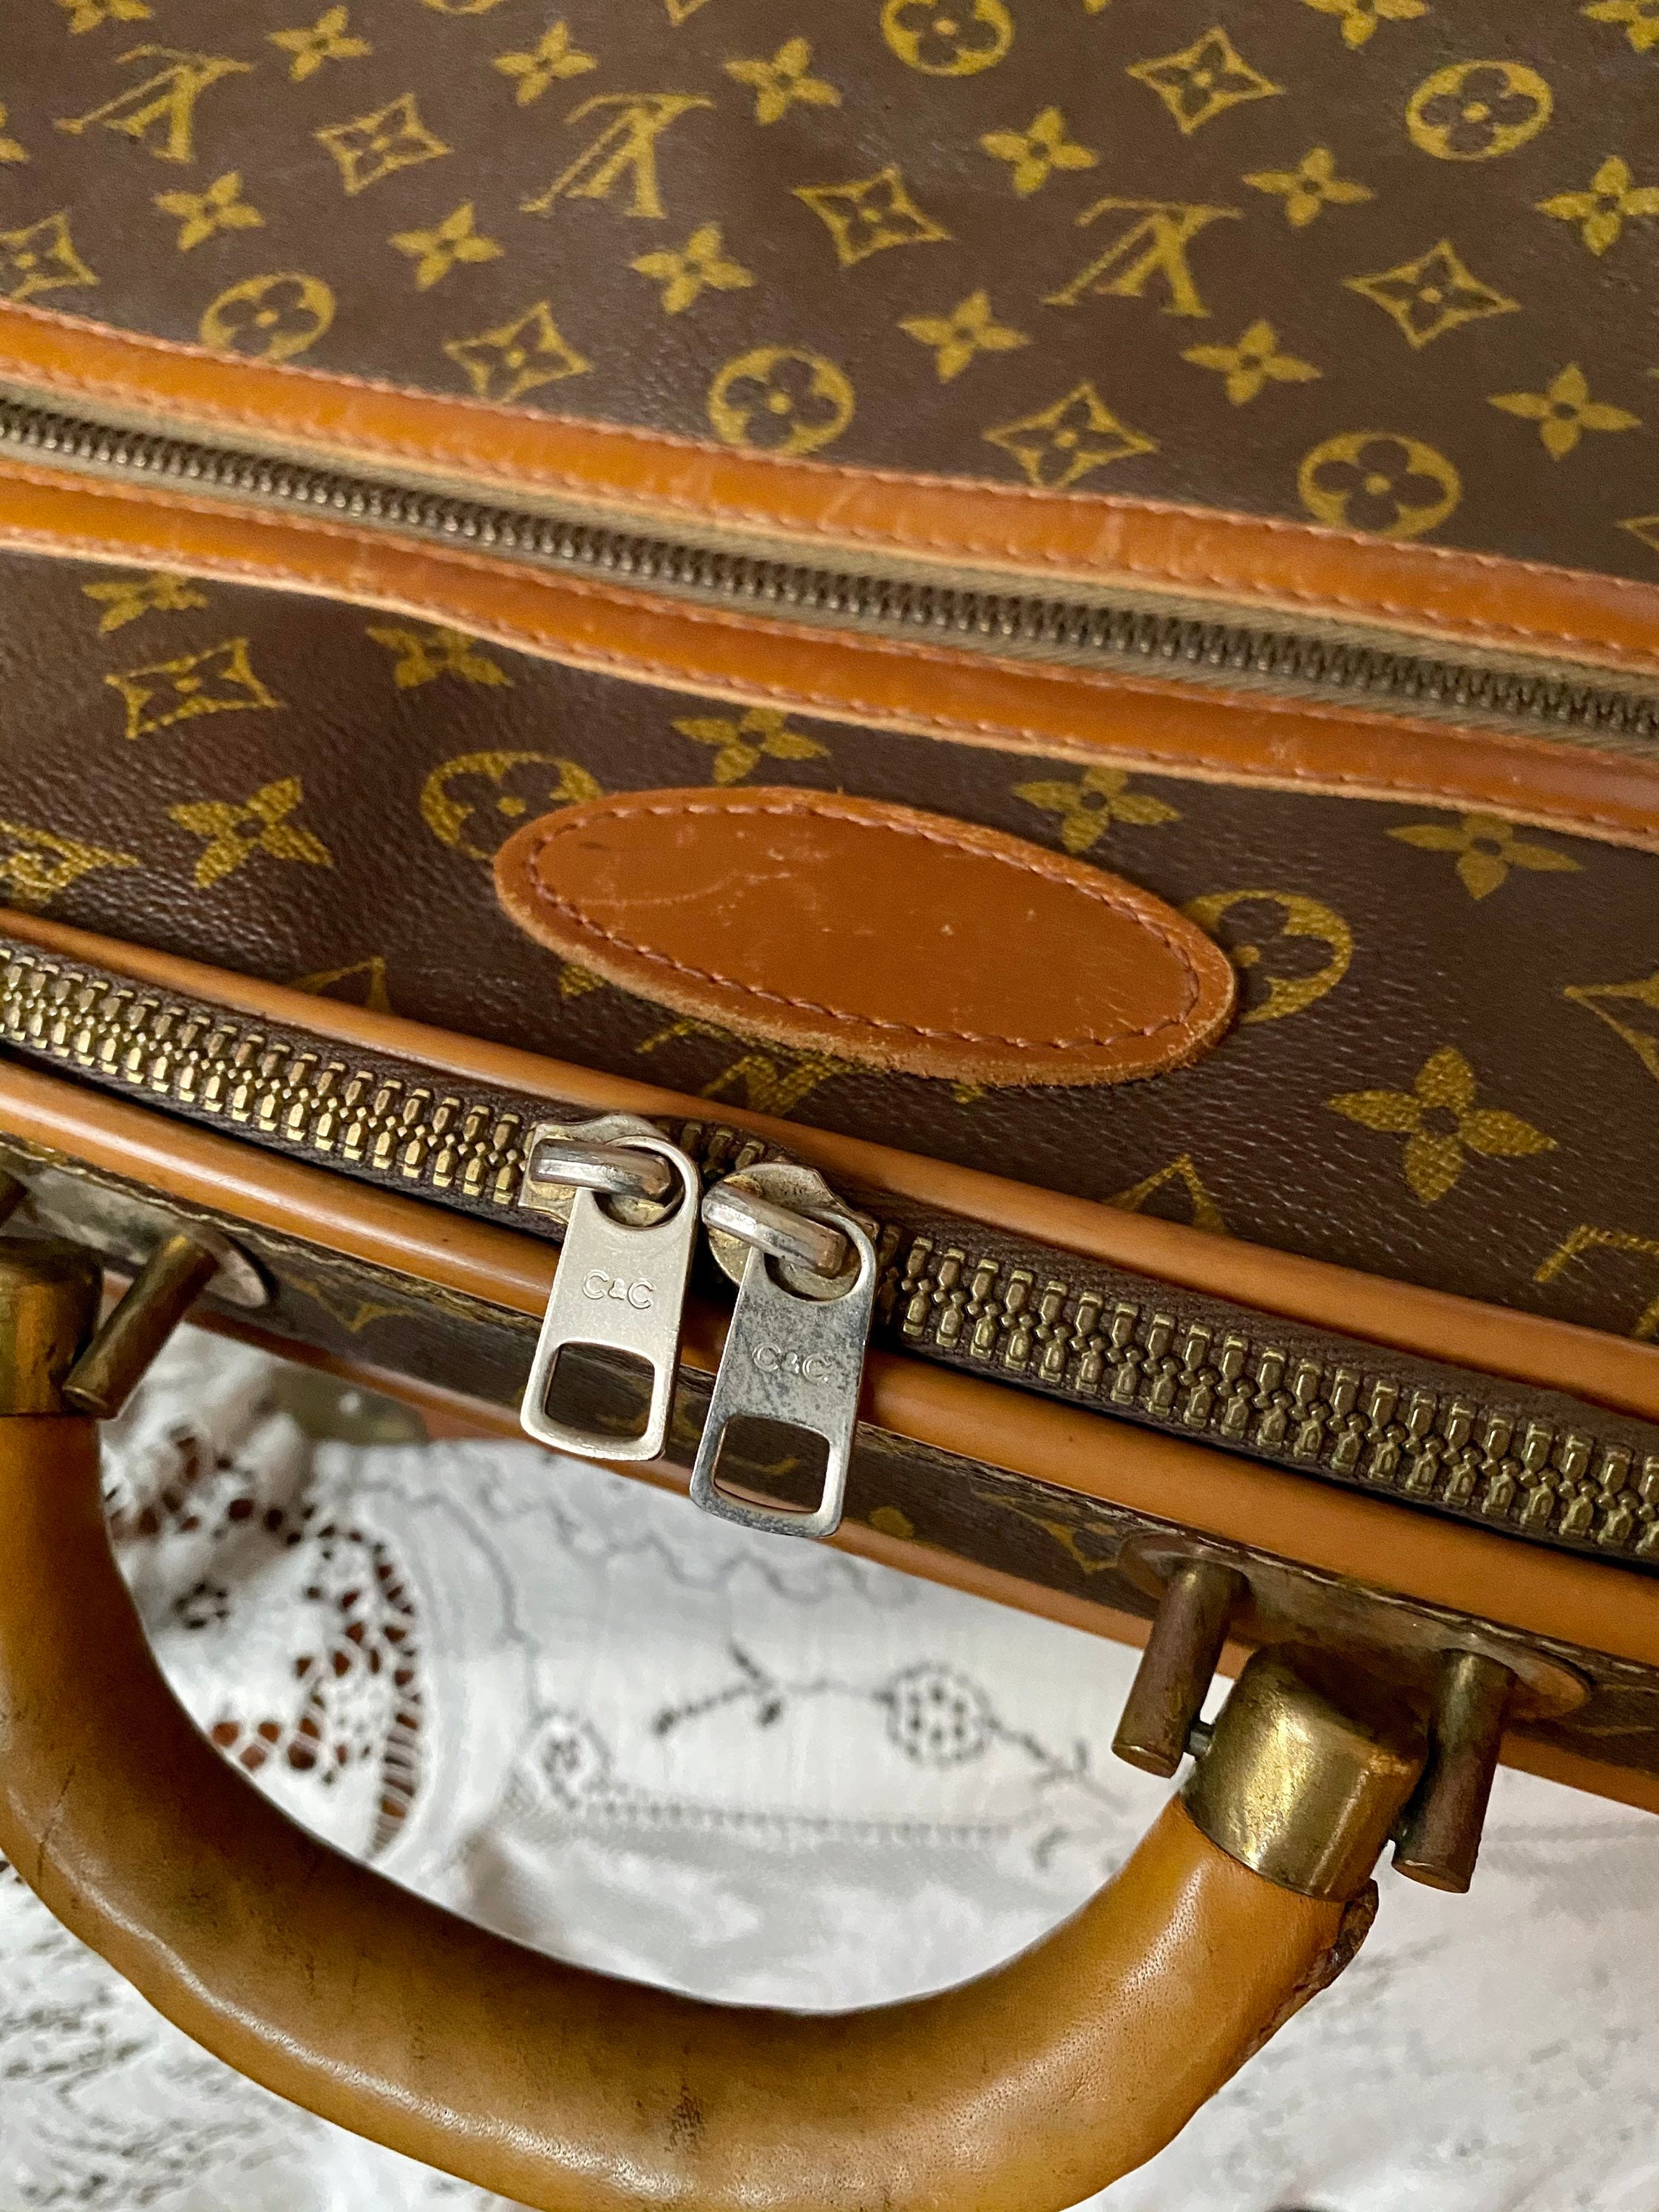 Louis Vuitton Stratos Vintage Suitcase X-Large Monogram Canvas